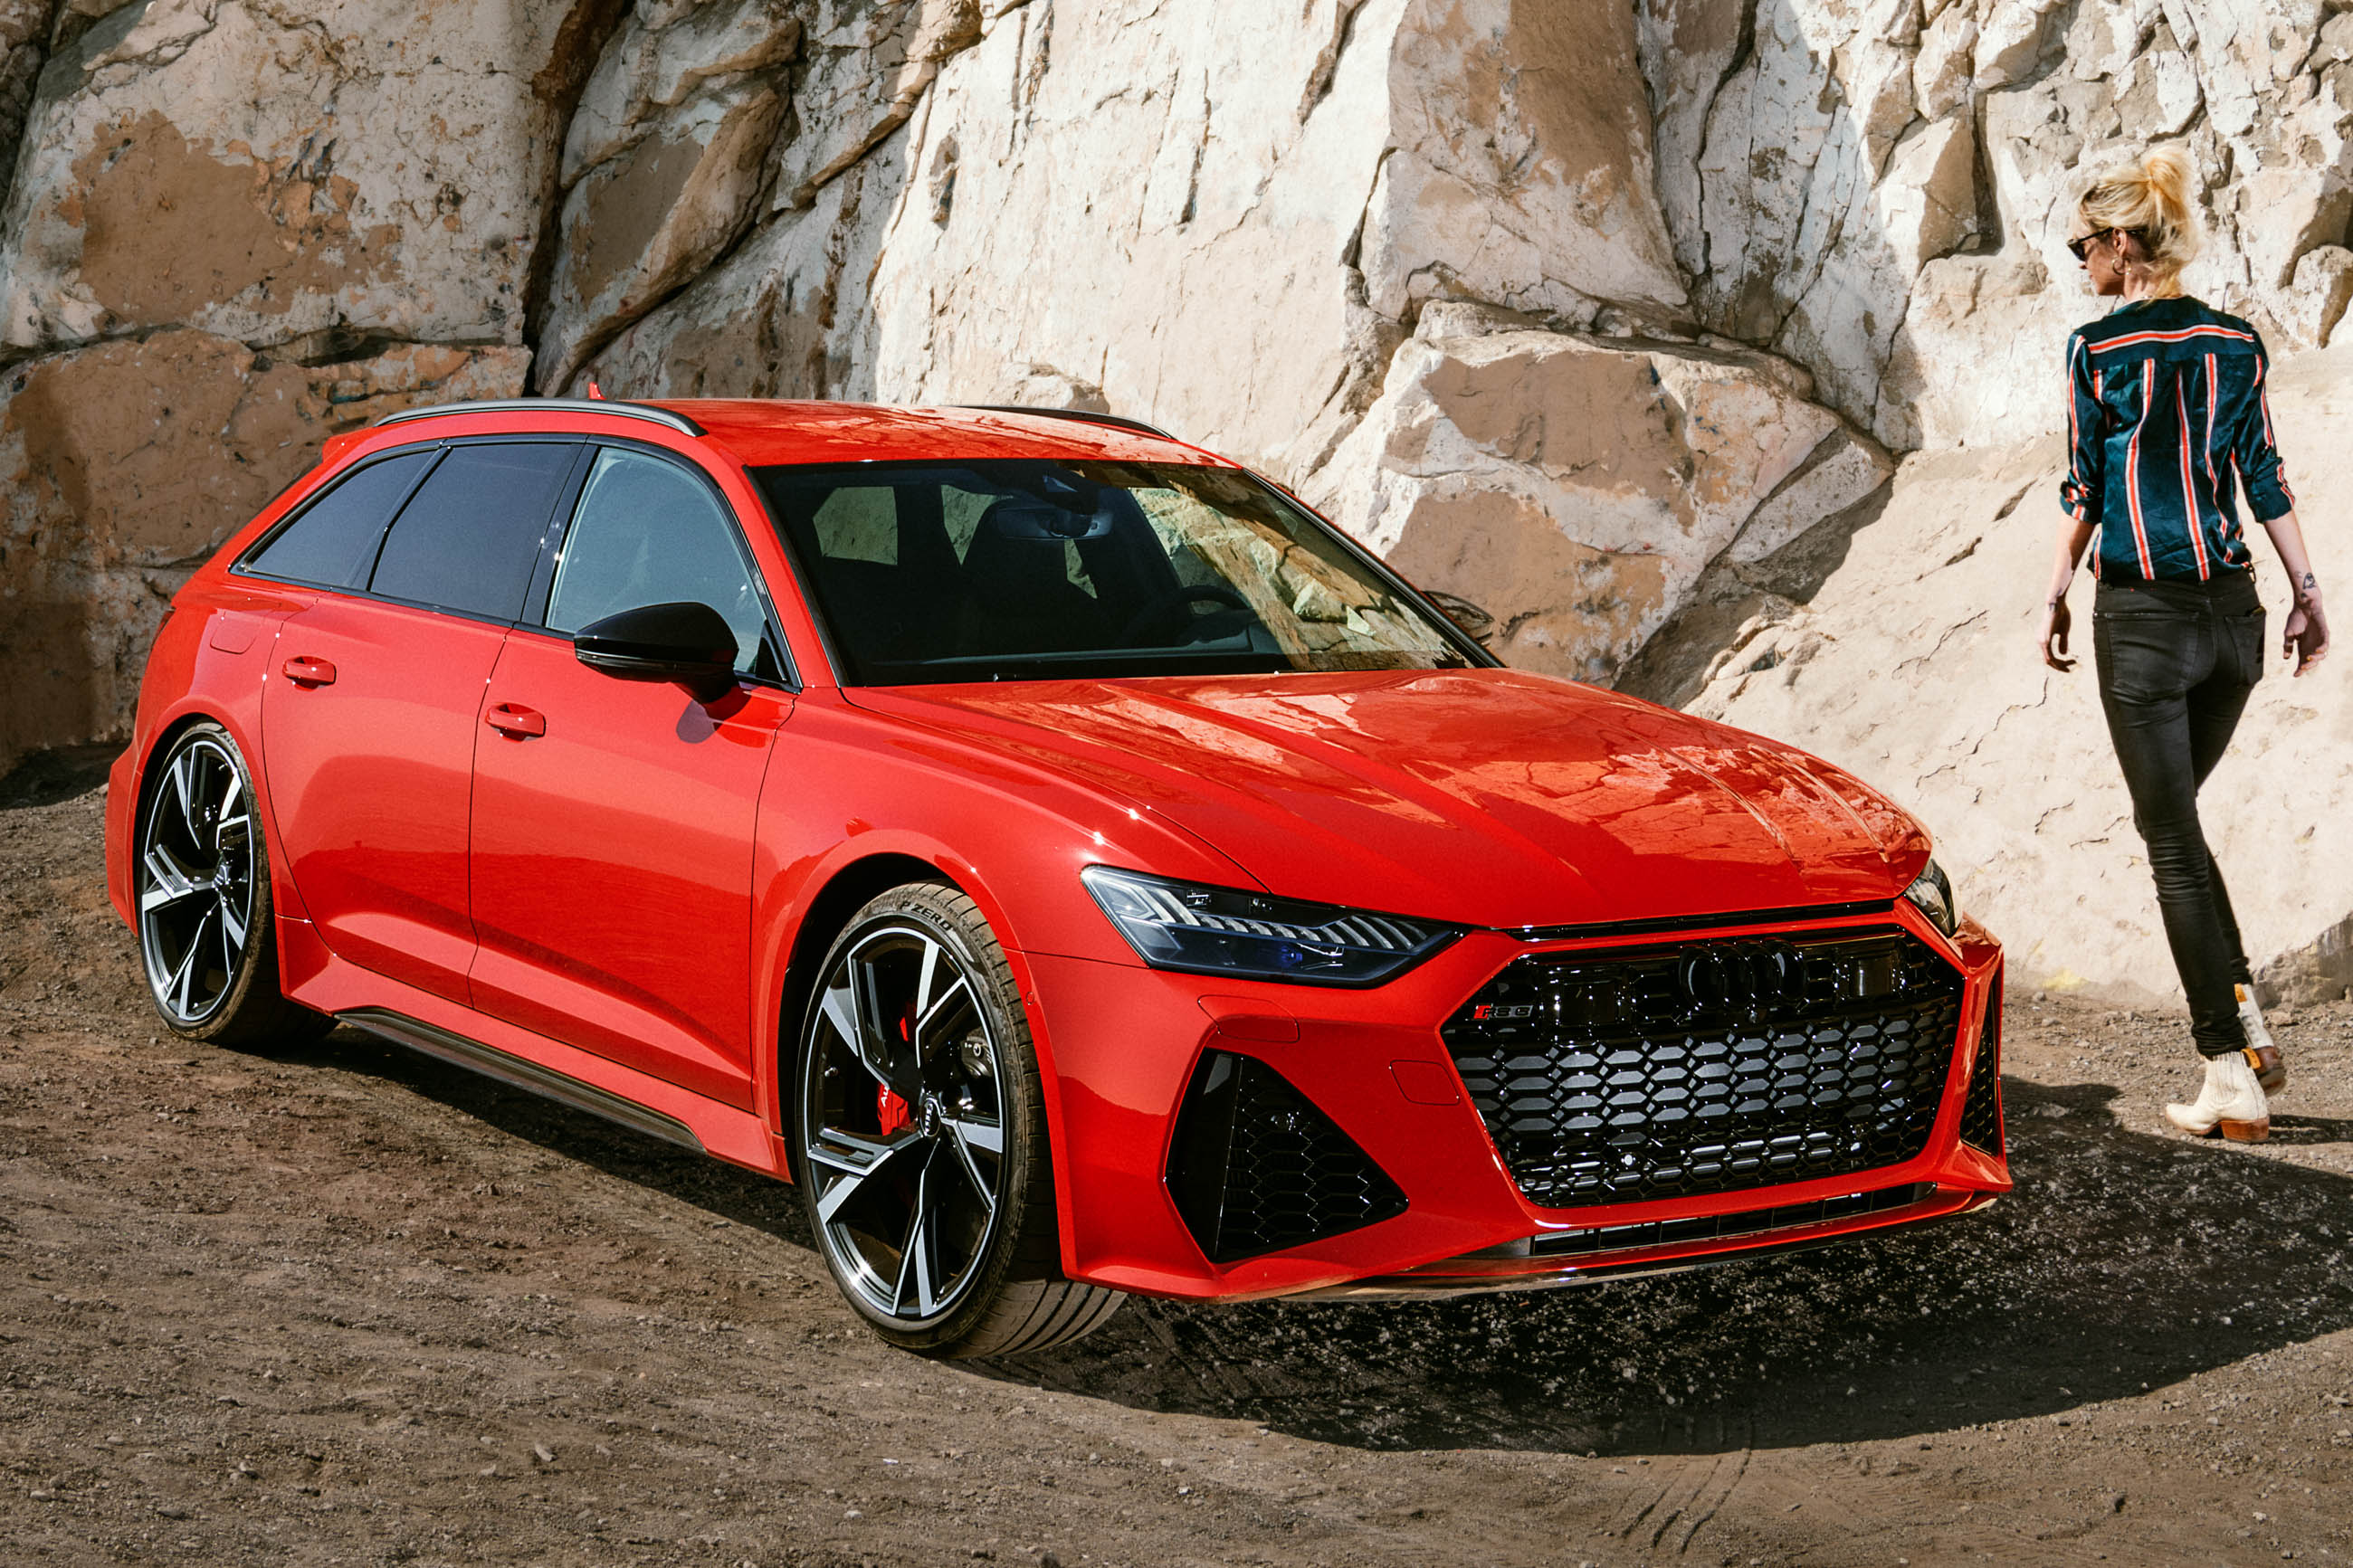 Supercar Review: 2021 Audi RS6 Avant